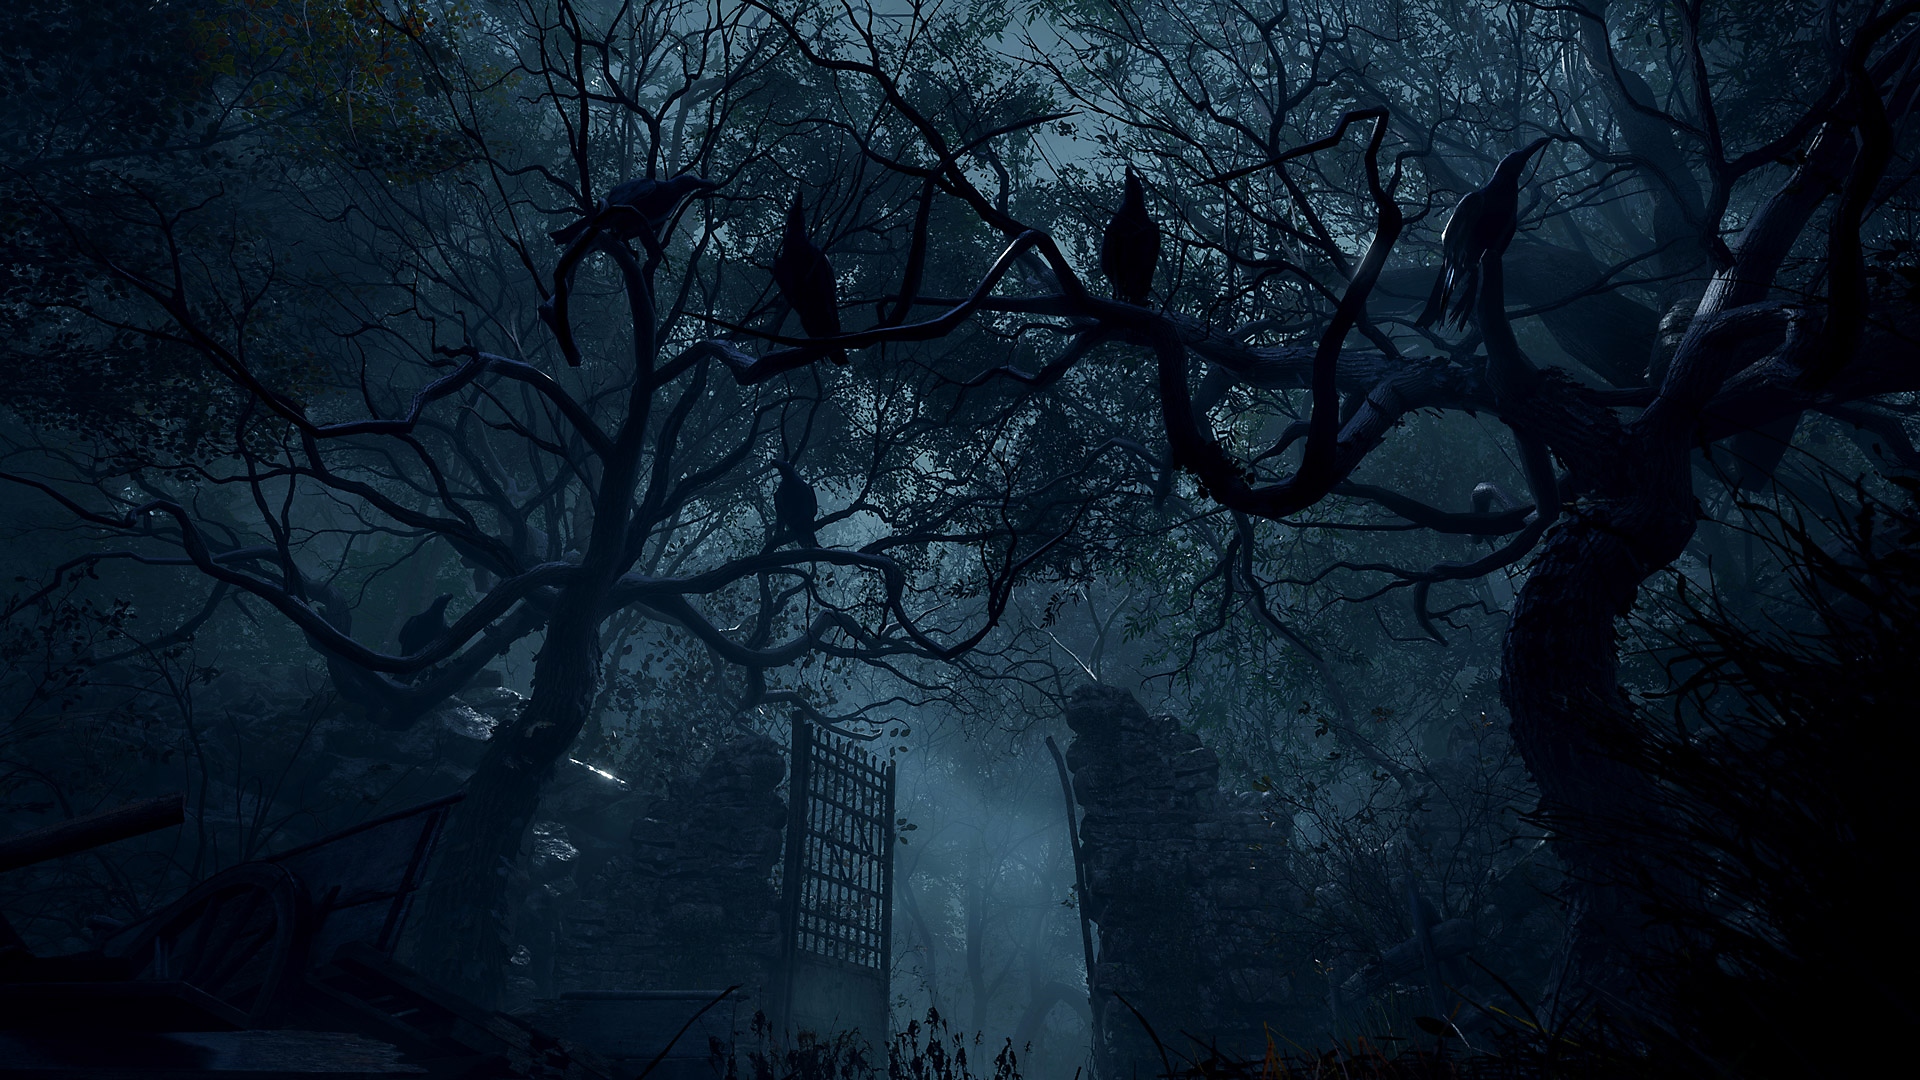 Istantanea della schermata di Resident Evil 4 che mostra alti cancelli di pietra che si ergono in un'area boschiva.